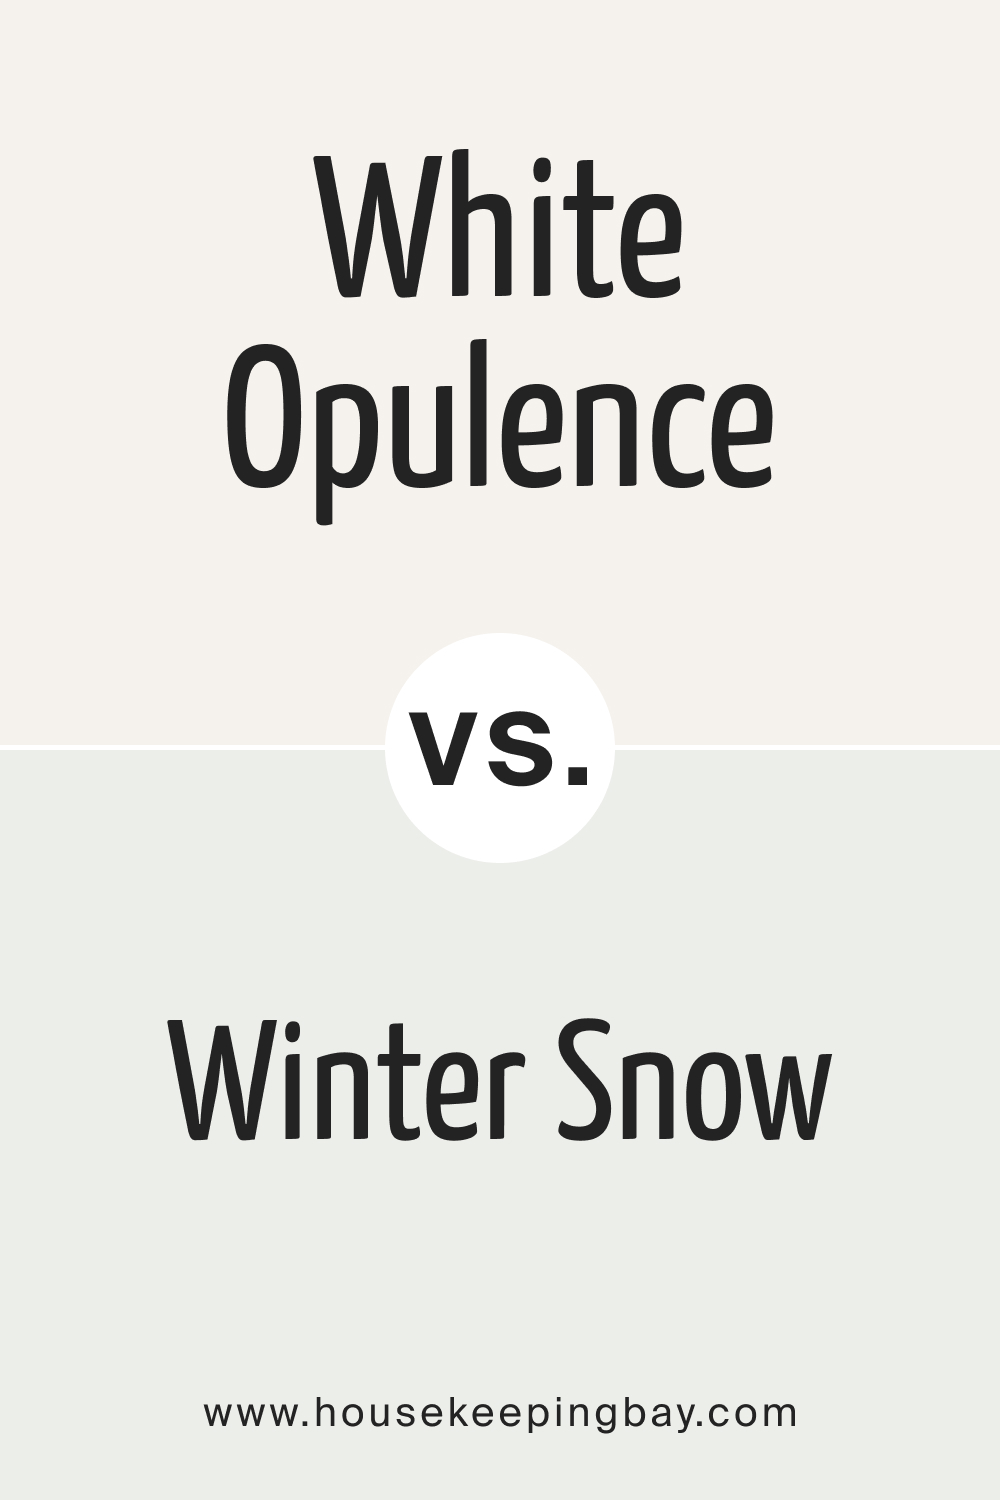 White Opulence OC 69 vs BM Winter Snow OC 63